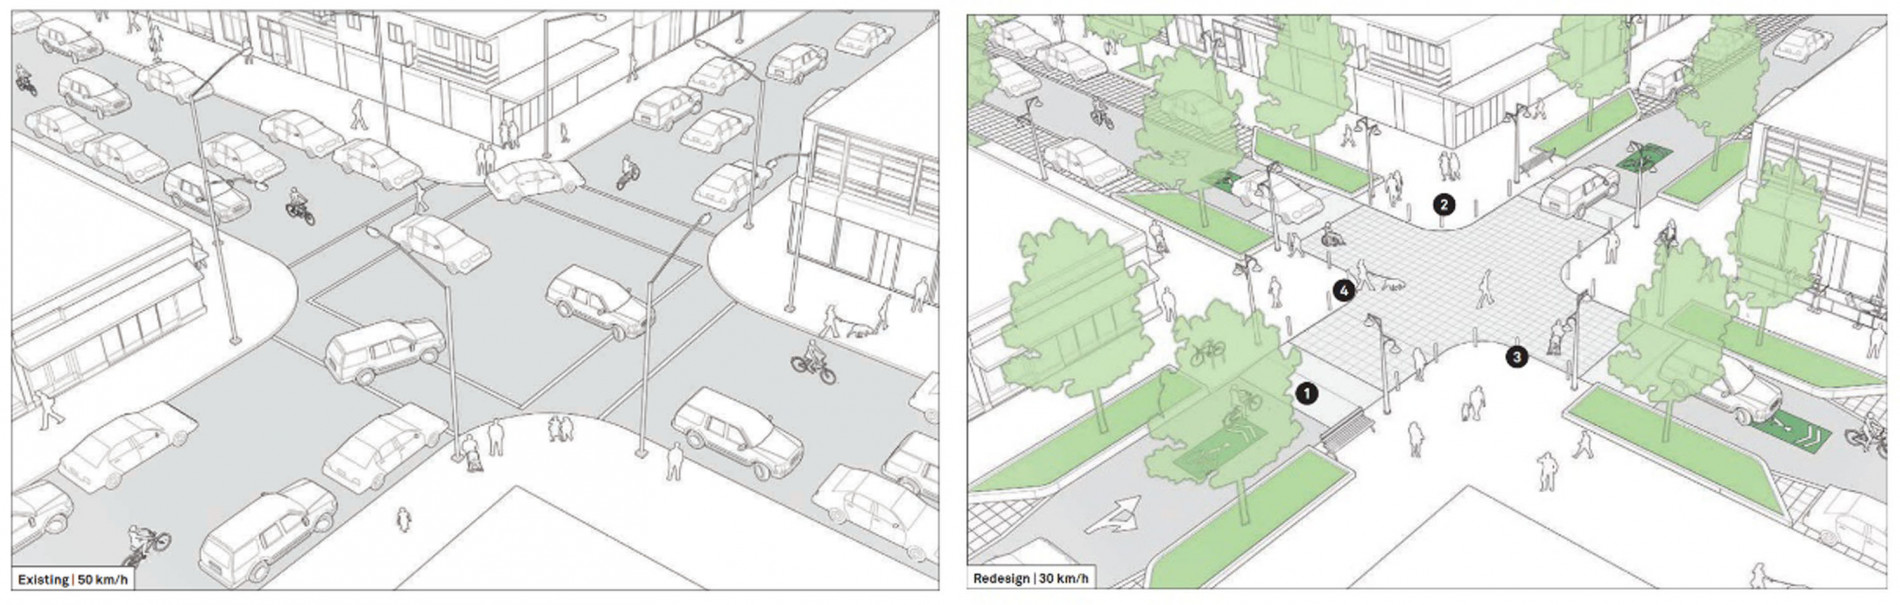 Cây xanh đường phố, từ hạ tầng kỹ thuật đến chiến lược hành lang sinh thái - Tạp chí Kiến Trúc